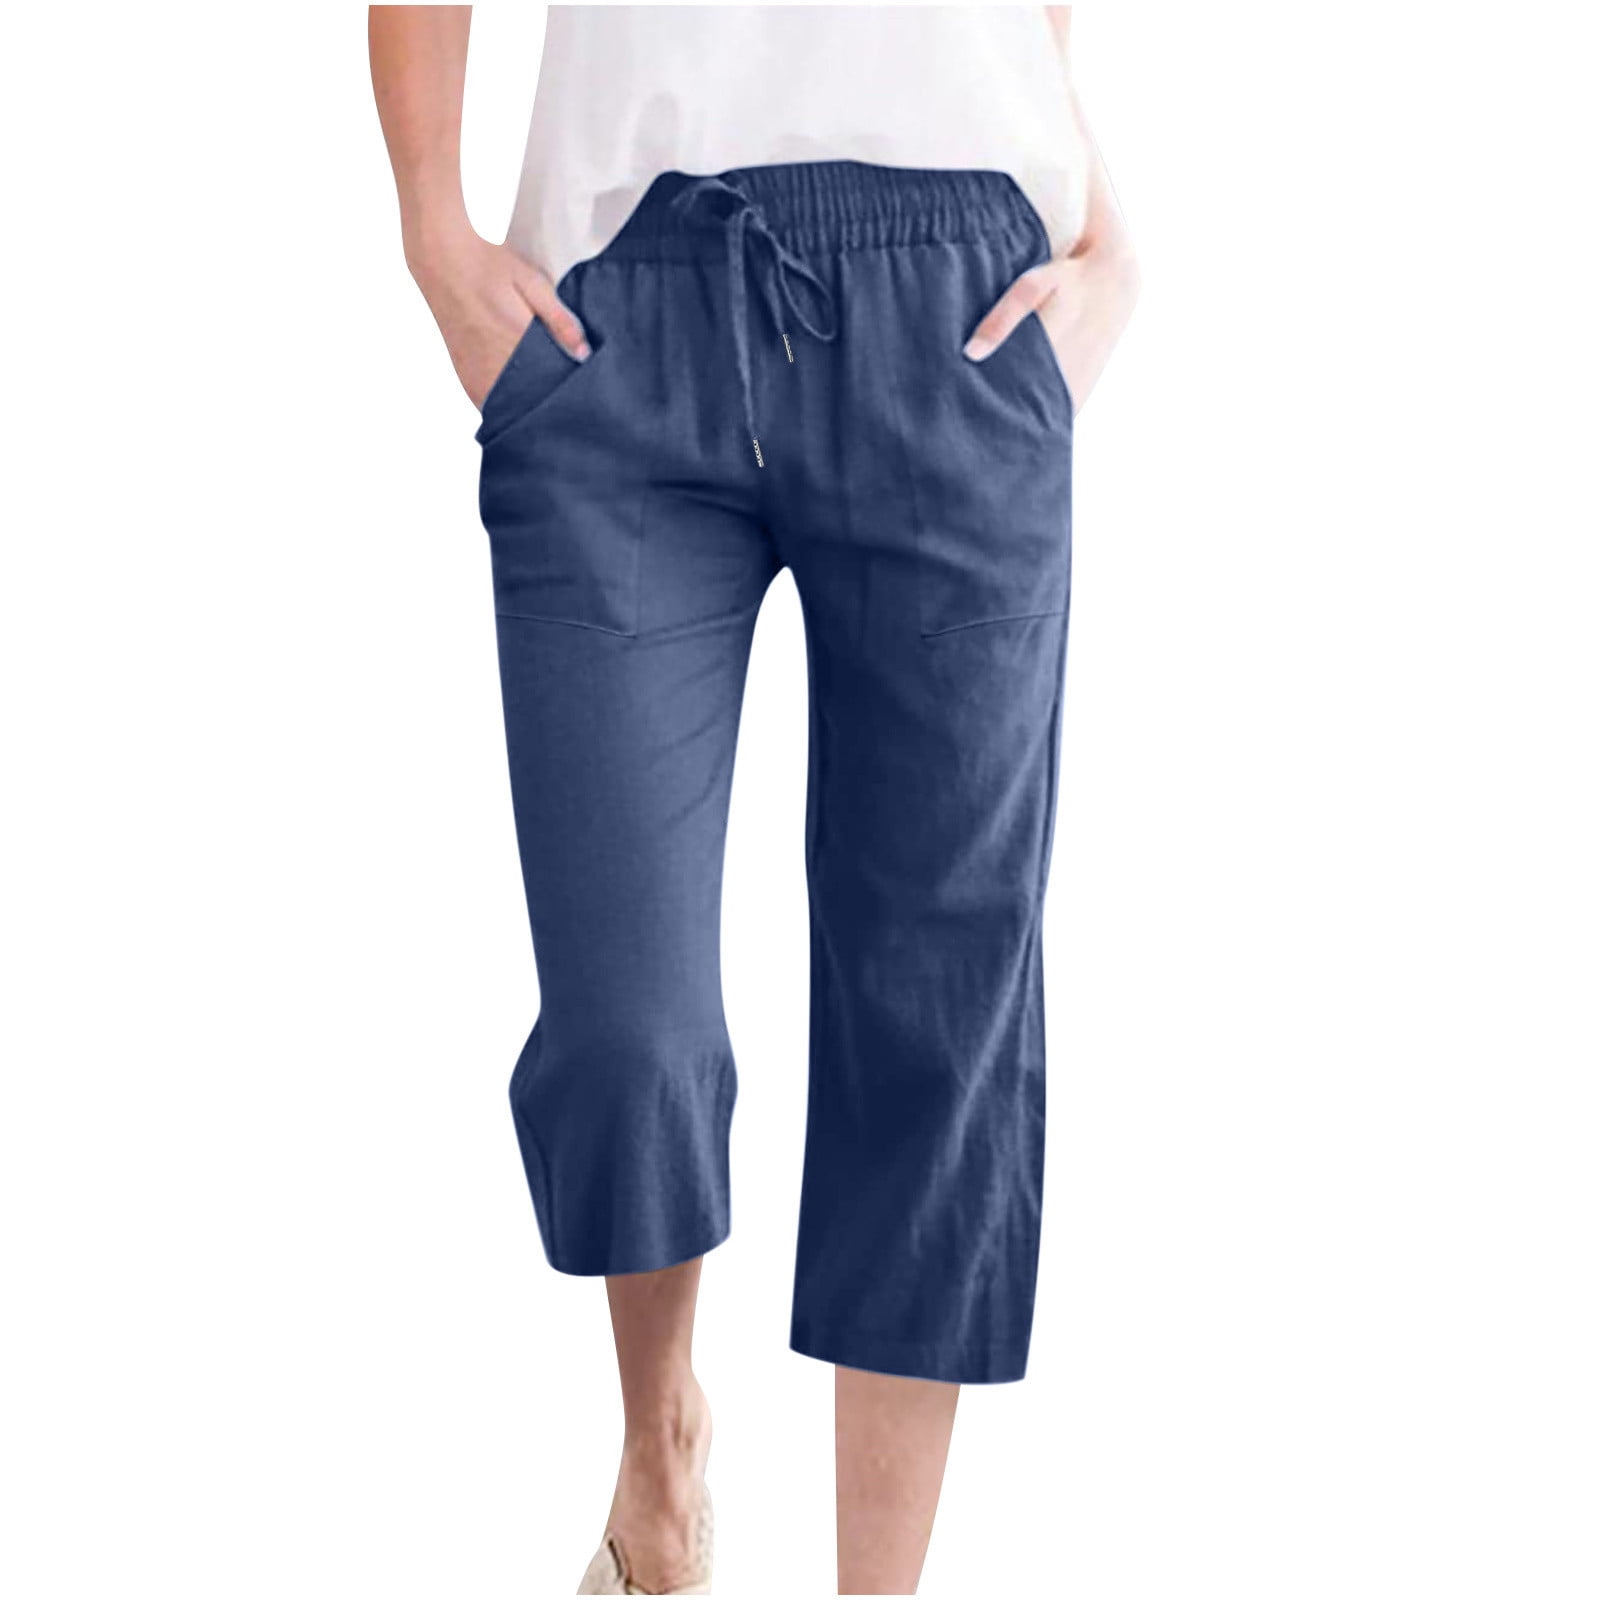 Summer Capri Pants for Women Cotton Linen Solid Color Capris Slacks ...